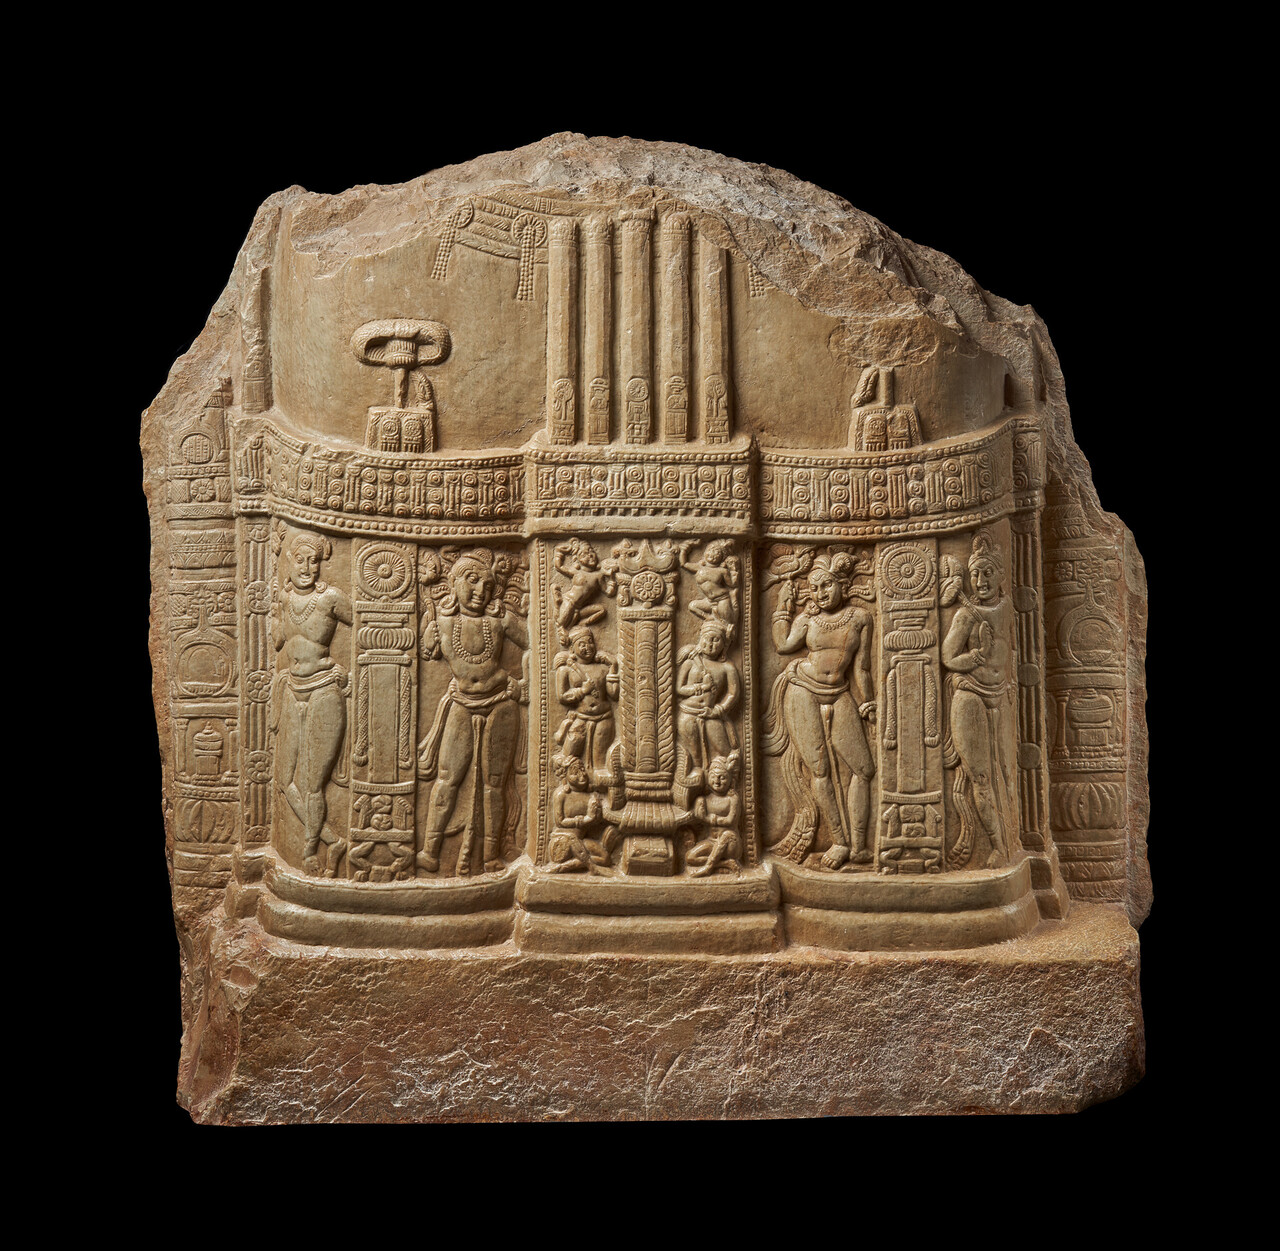 불타는 기둥을 향한 경배, 1세기, 인도 아마라바티고고학박물관. 국립중앙박물관 제공.